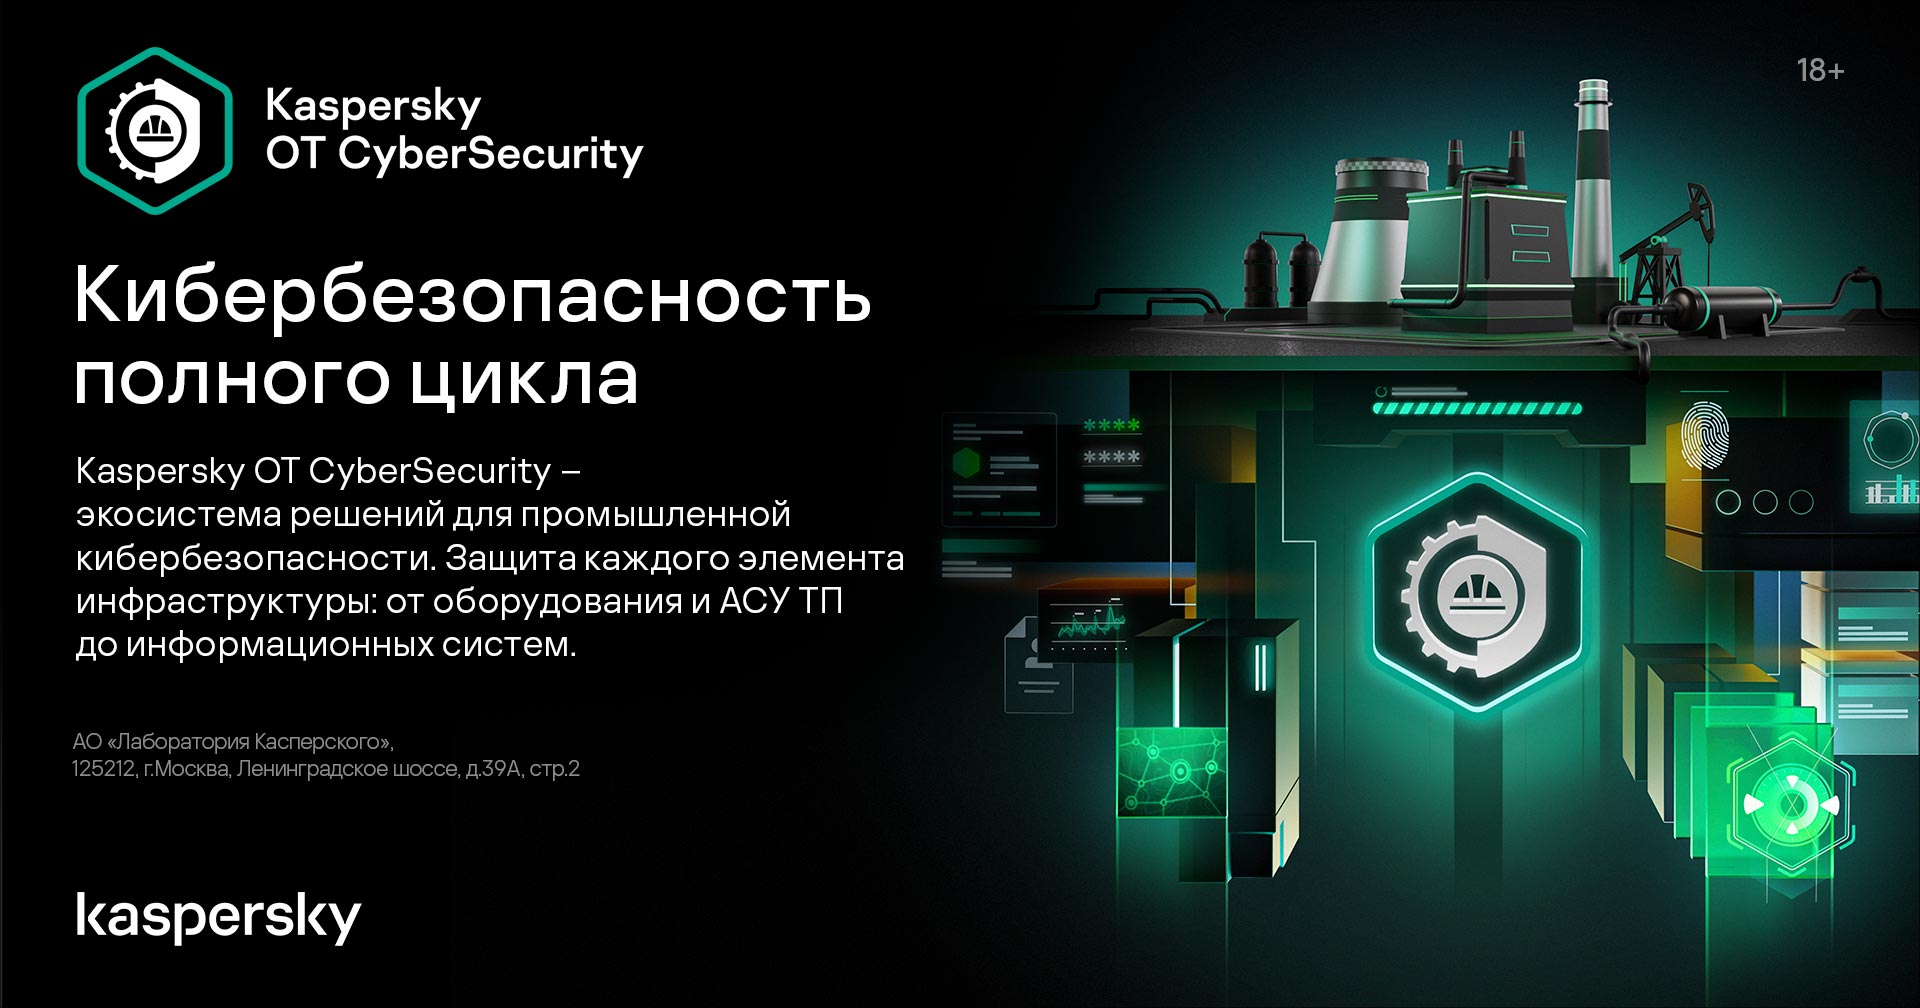 Kaspersky OT CyberSecurity